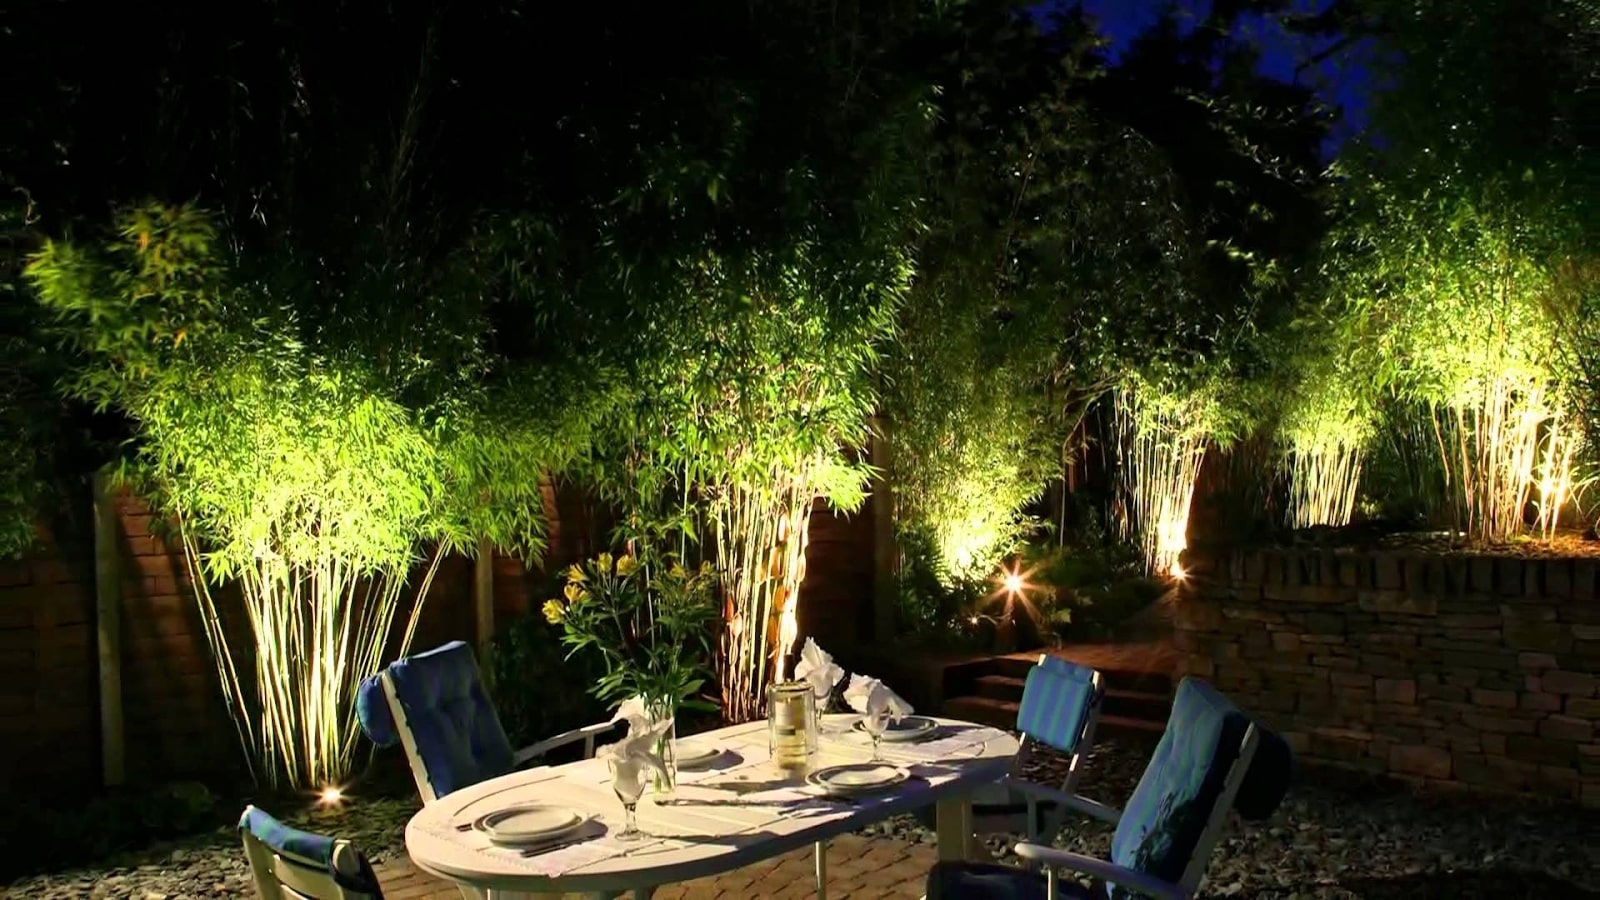 Đèn pha chiếu cây được lắp đặt hắt ánh sáng từ dưới lên trên tạo điểm nhấn cho khu vườn